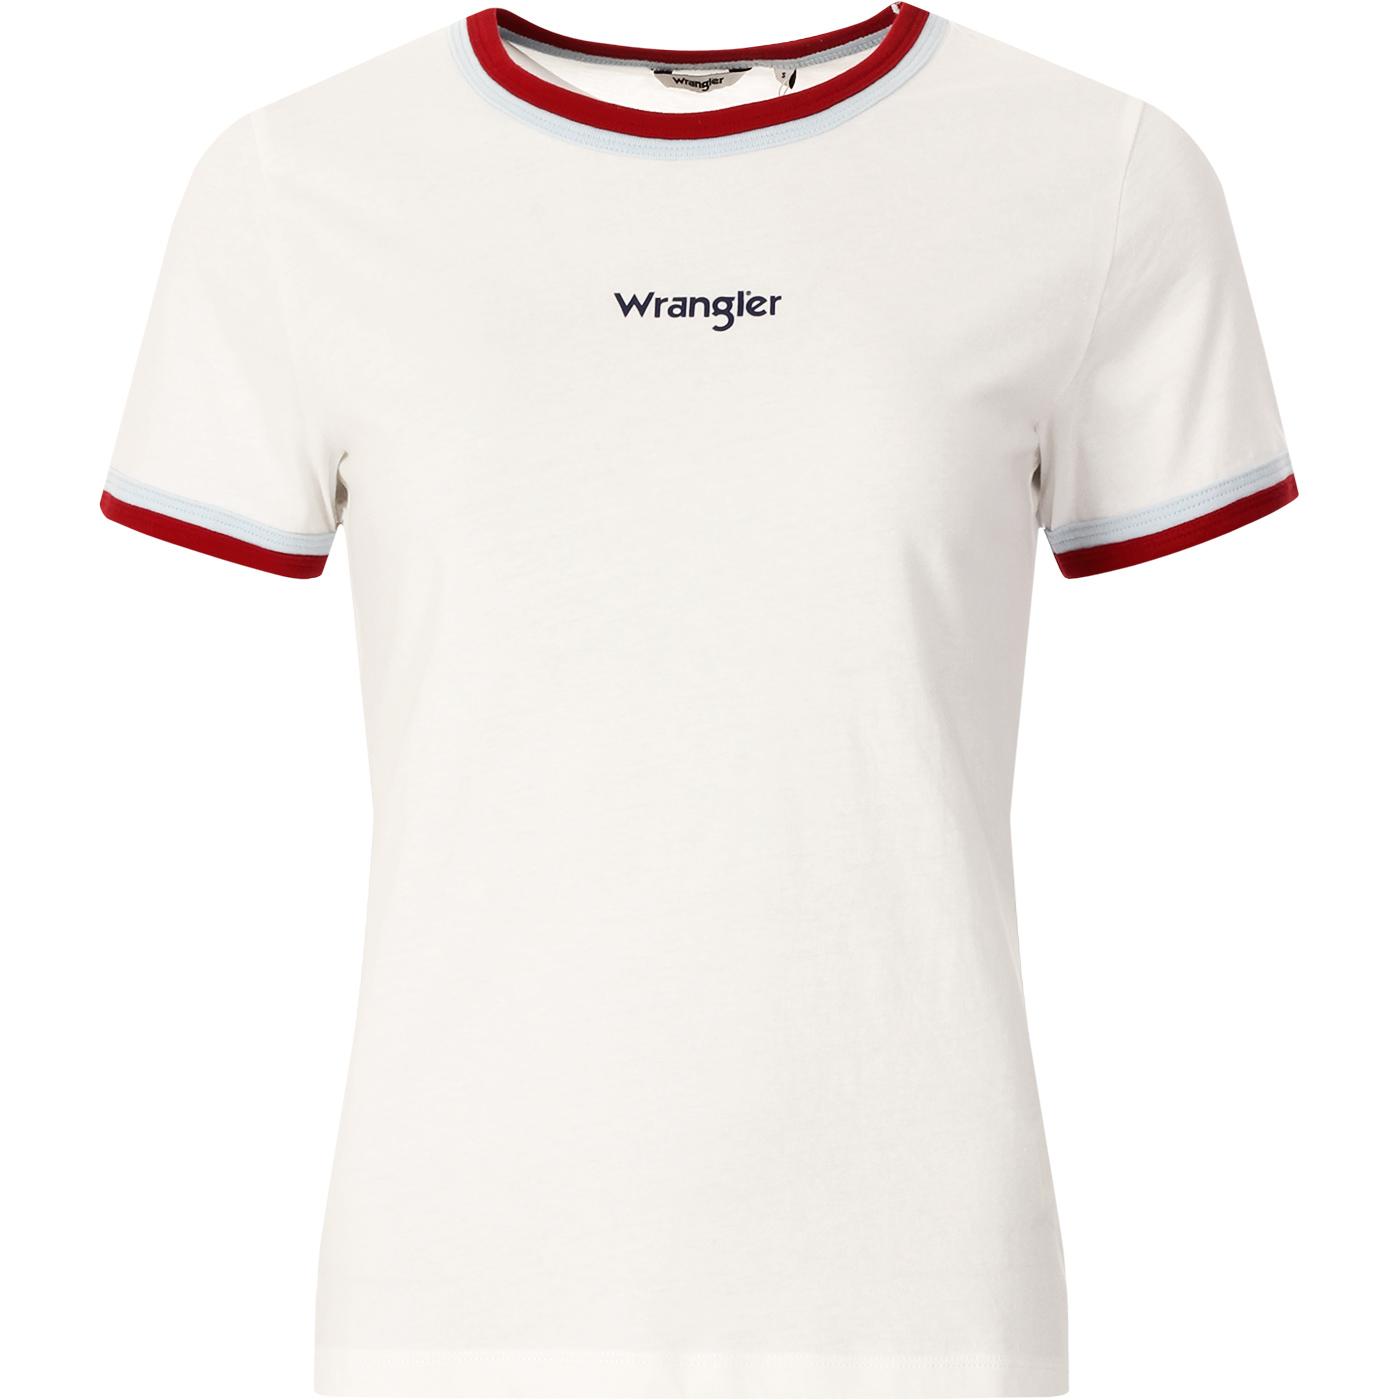 WRANGLER Women's Retro Double Ringer Tee White/Red/Sky